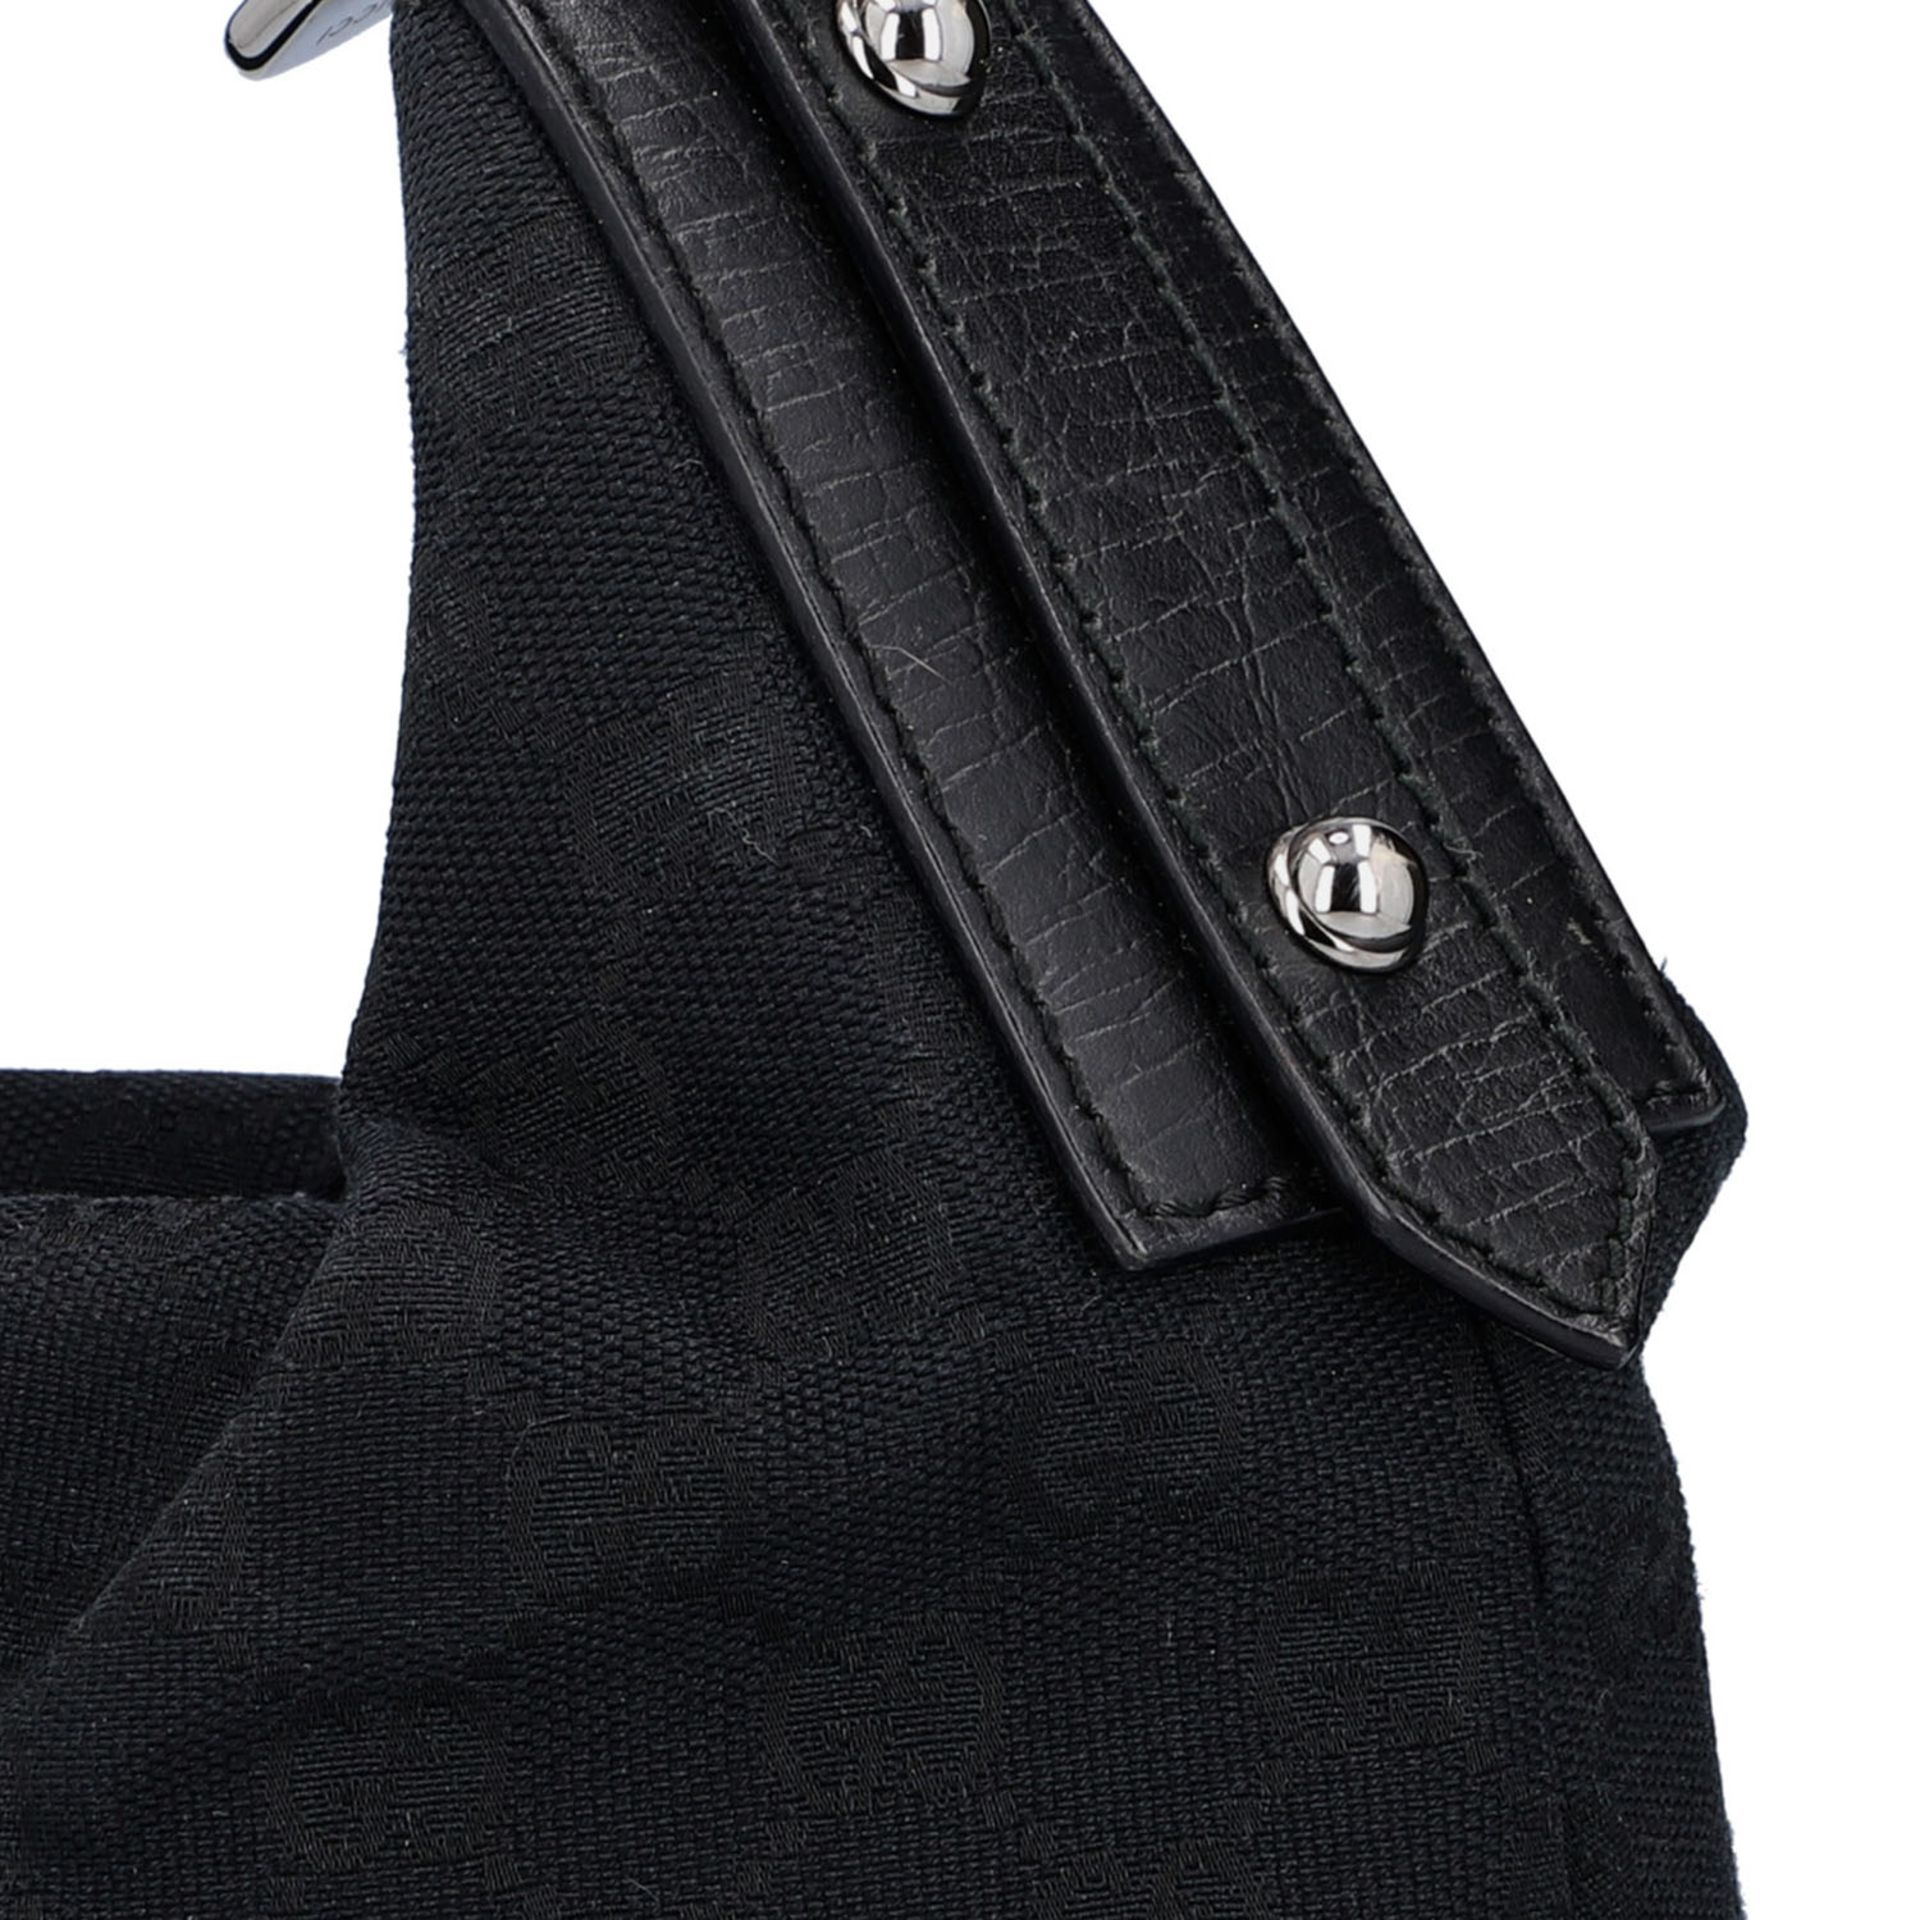 GUCCI Handtasche. Guccissima Design auf schwarzem Textil mit silberfarbener Hardware, - Bild 7 aus 8